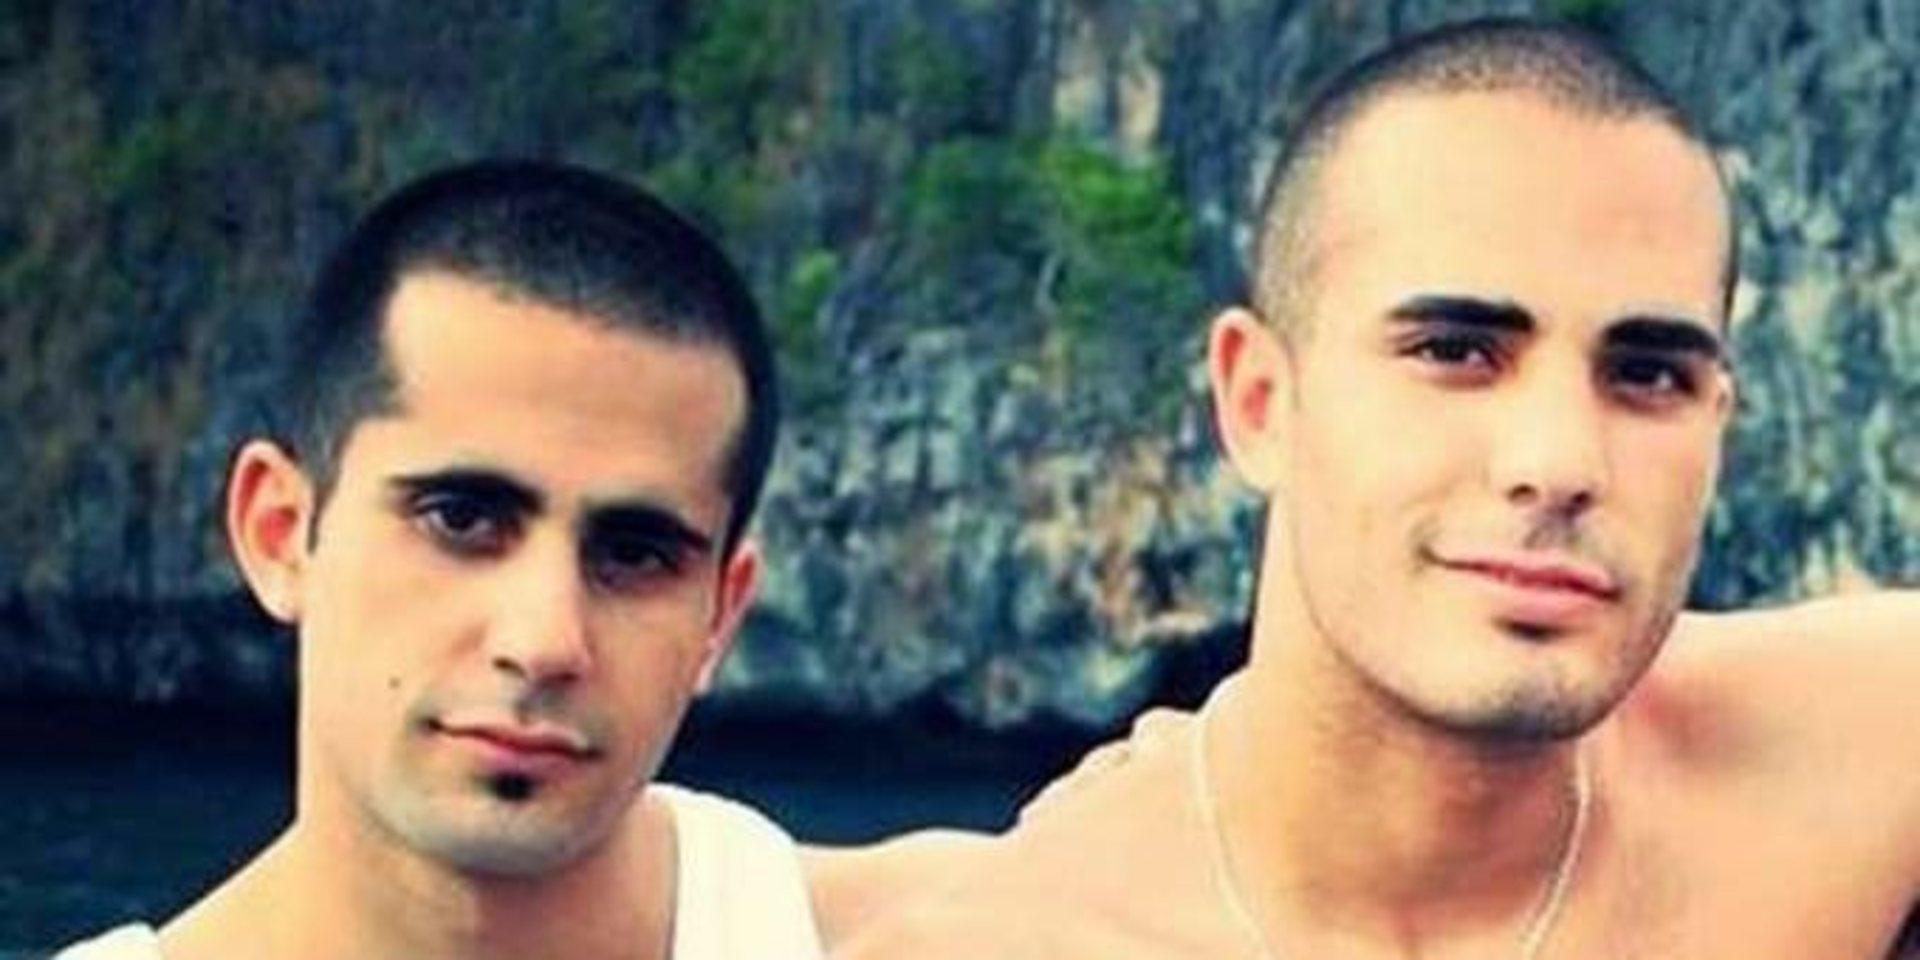 Mark och Martin Saliba dömdes för trippelmordet i Uddevalla i mars 2015. Martin Saliba flydde från Sverige men dömdes senare i Libanon där han nu avtjänar ett livstidsstraff.